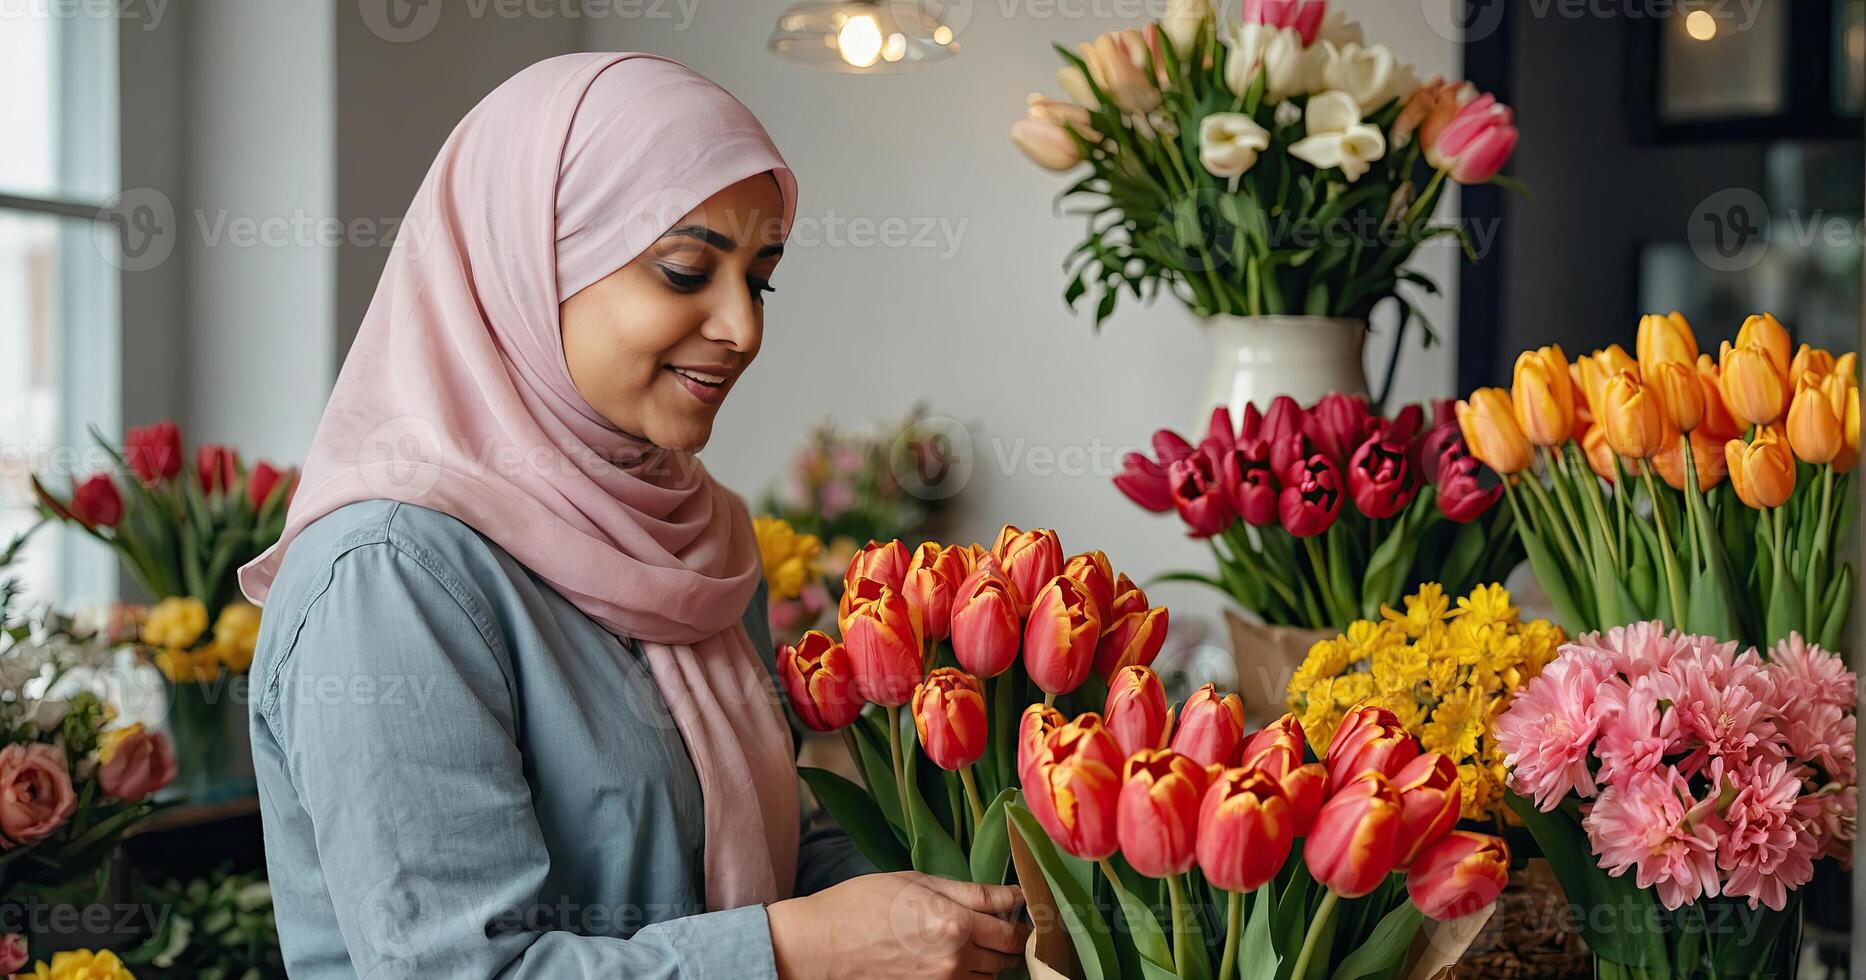 musulman femme fleuriste recueille bouquet de tulipes- Frais Couper fleurs dans des boites et des vases dans fleur magasin et racks pour vente, livraison pour le vacances. printemps, Mars 8, aux femmes jour, anniversaire. photo